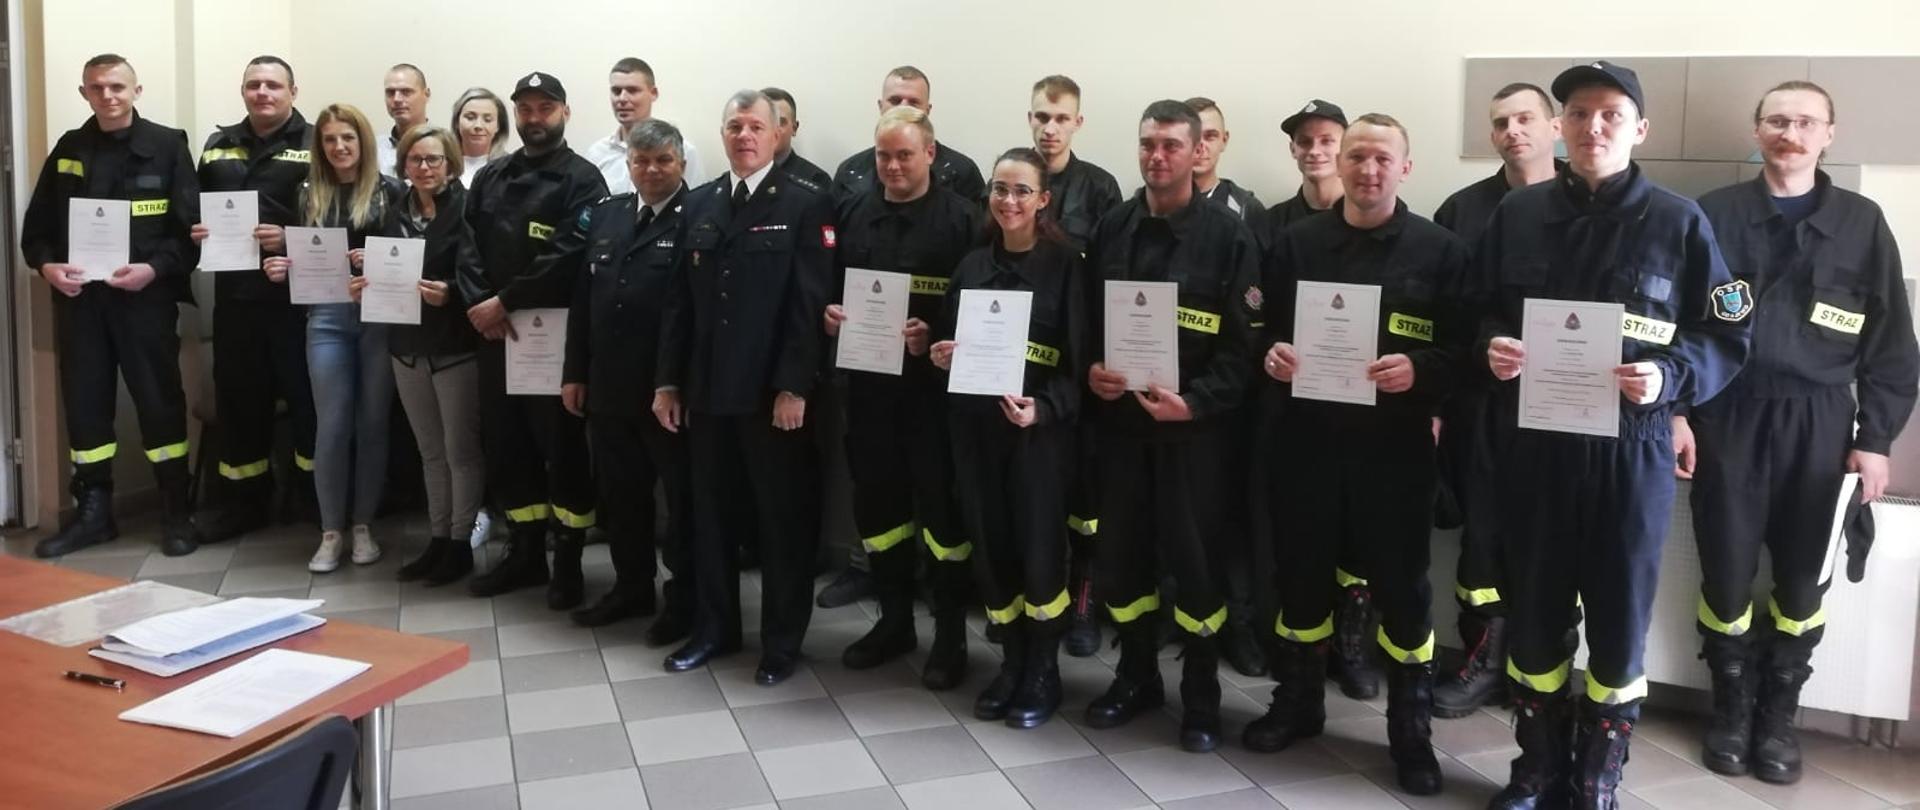 Zdjęcie grupowe. Zakończenie szkolenia podstawowego druhów Ochotniczych Straży Pożarnych z terenu powiatu grajewskiego